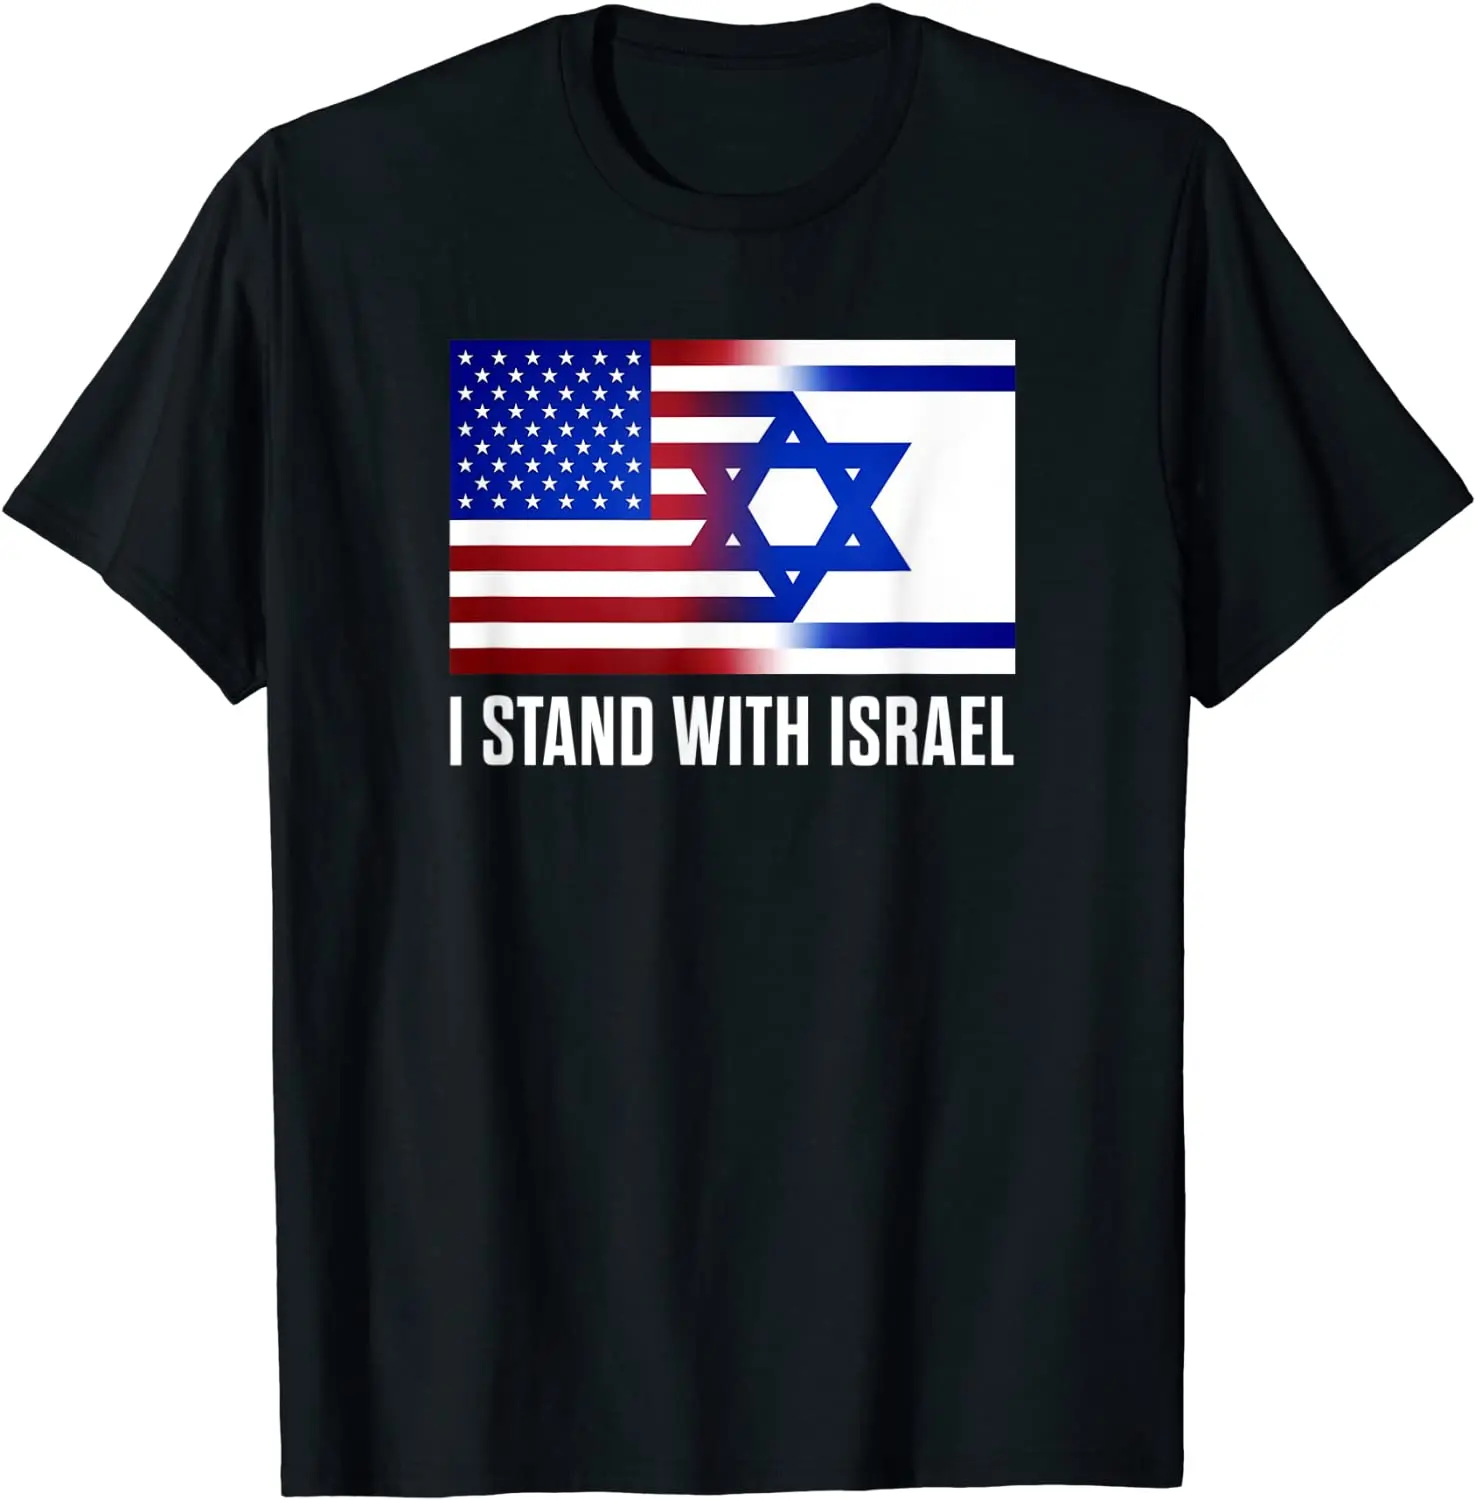 

Летняя хлопковая футболка с надписью I Stand with Израиль патриотическая футболка с флагом США и Израиля повседневные рубашки с круглым вырезом ...